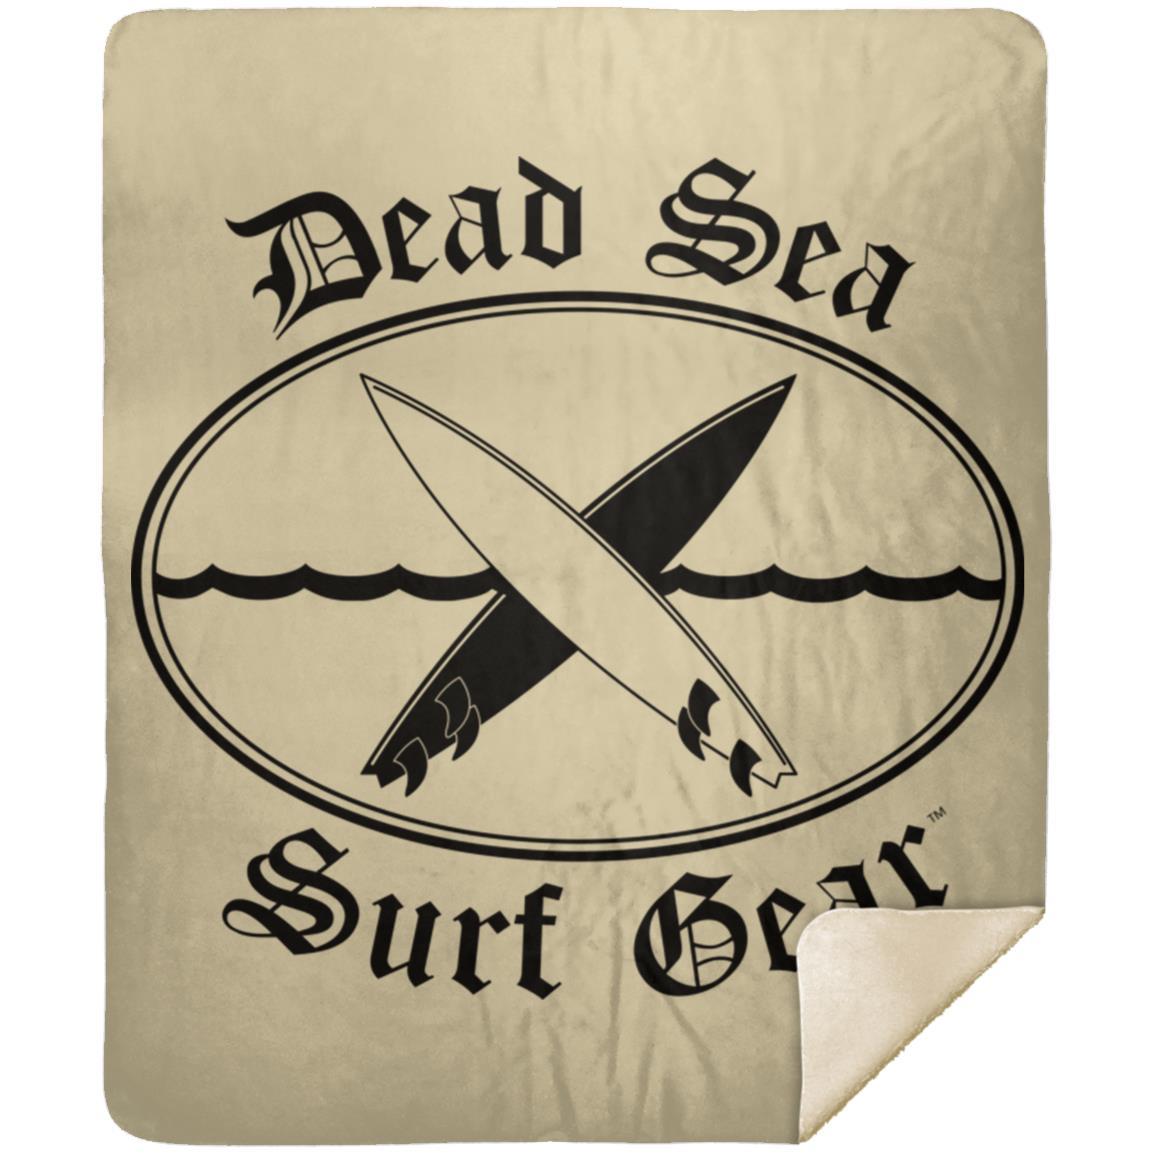 Dead Sea Surf Gear Premium Mink Sherpa Blanket 50x60